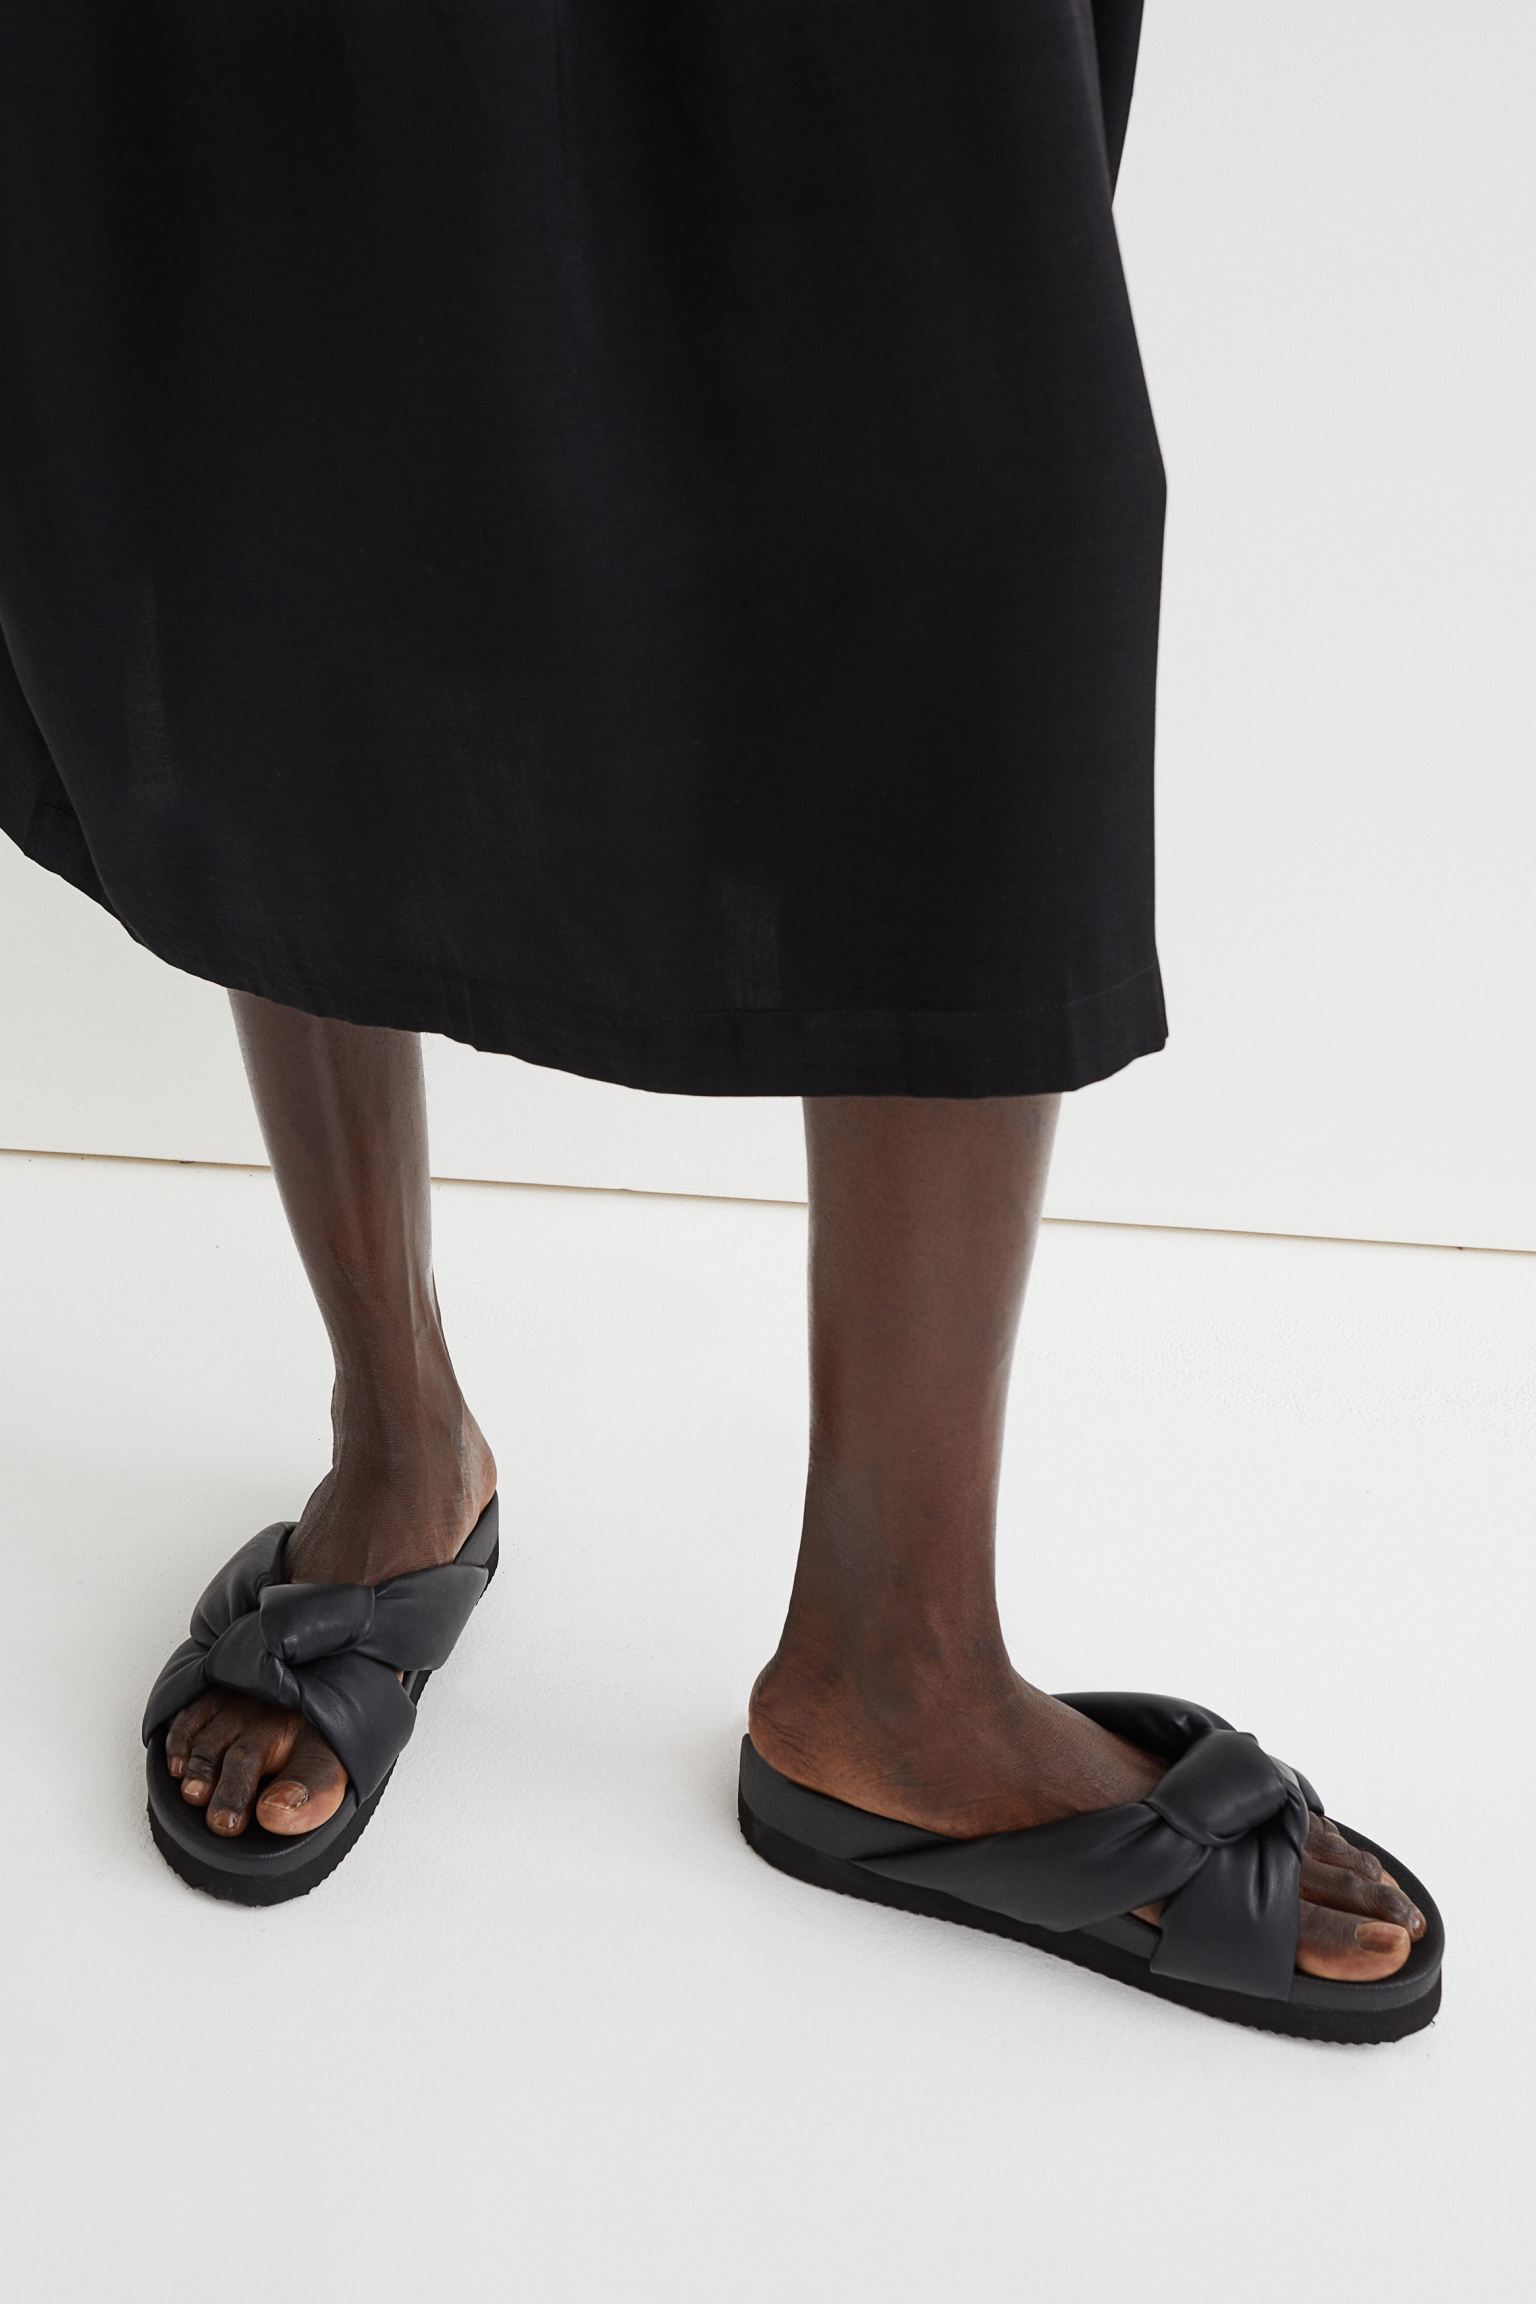 Rouguy Faye's Feet - I piedi di Rouguy Faye - Celebrities Feet 2023